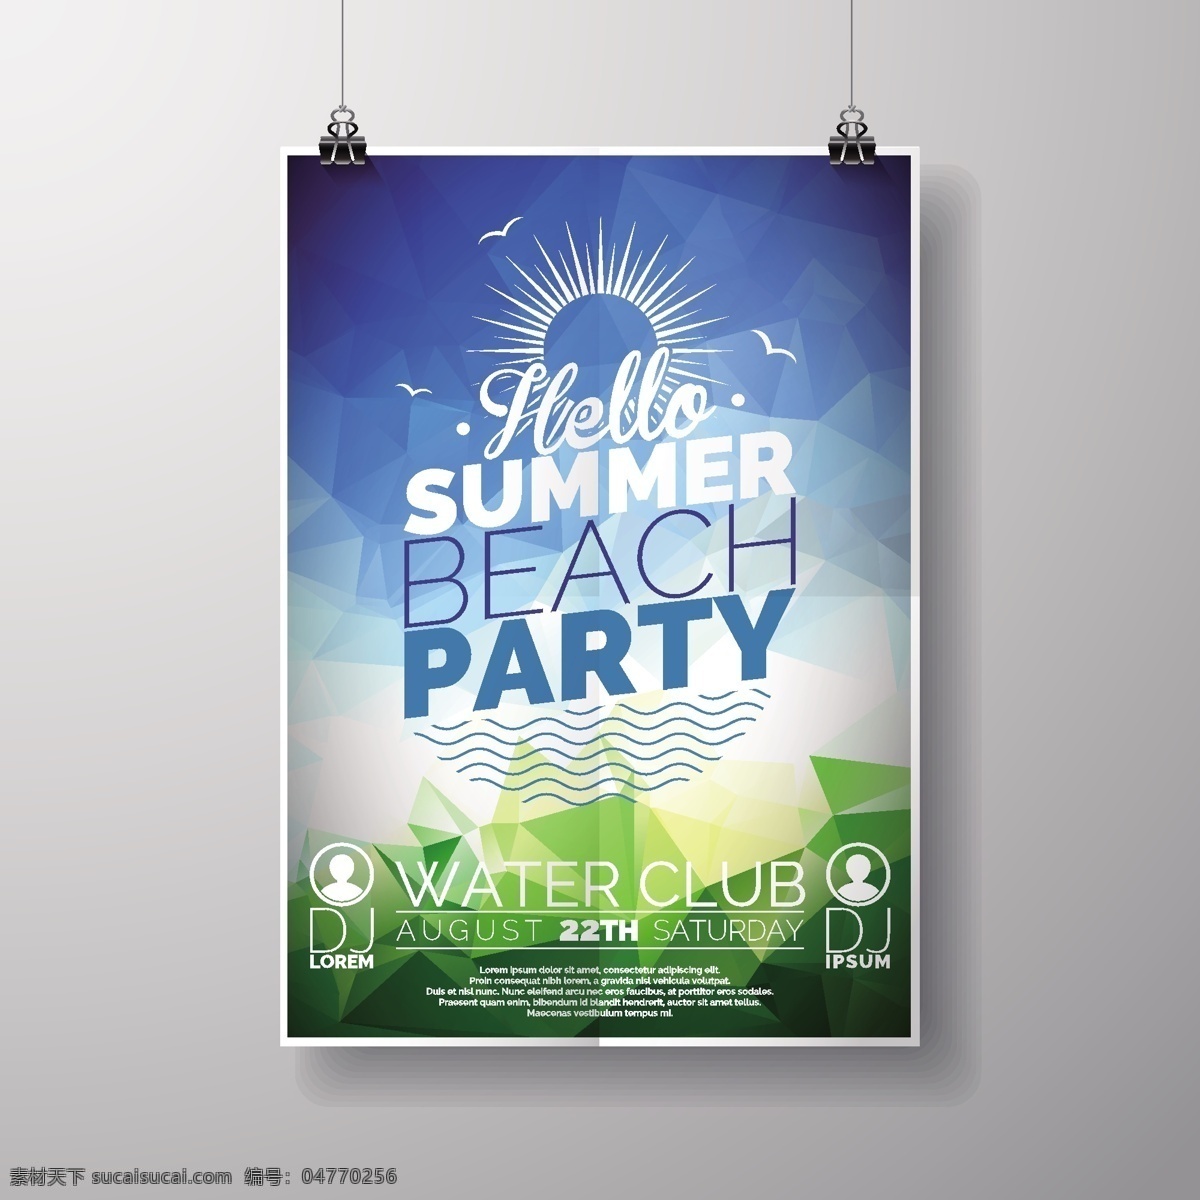 夏季 沙滩 派对 宣传单 太阳 夹子 俱乐部 海报 矢量图 灰色